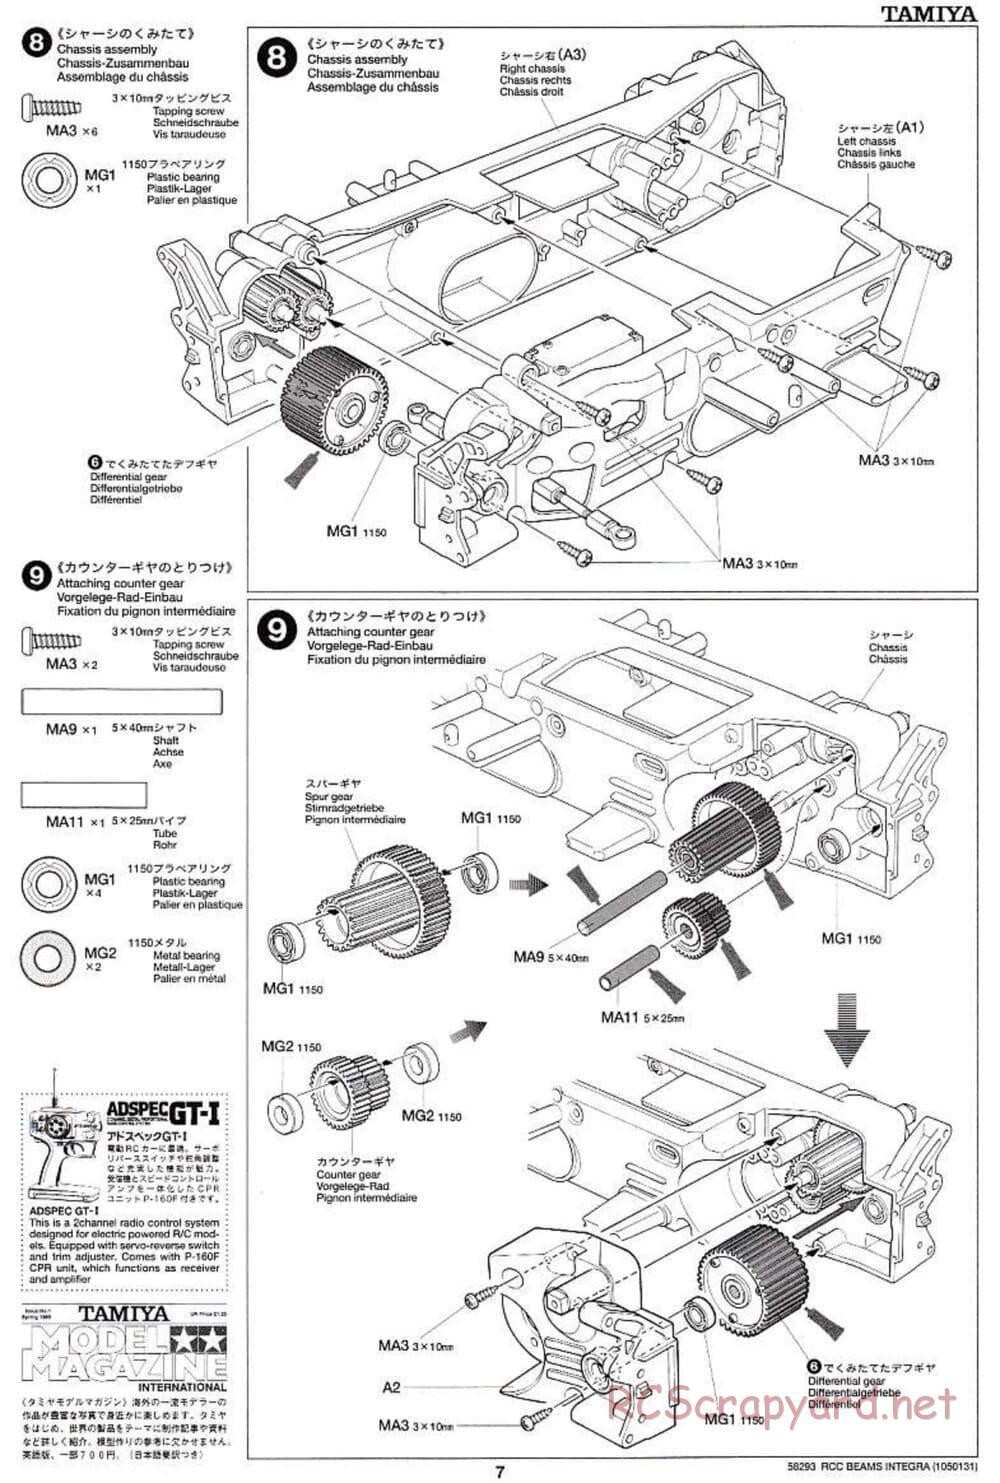 Tamiya - Beams Integra - TL-01 LA Chassis - Manual - Page 7